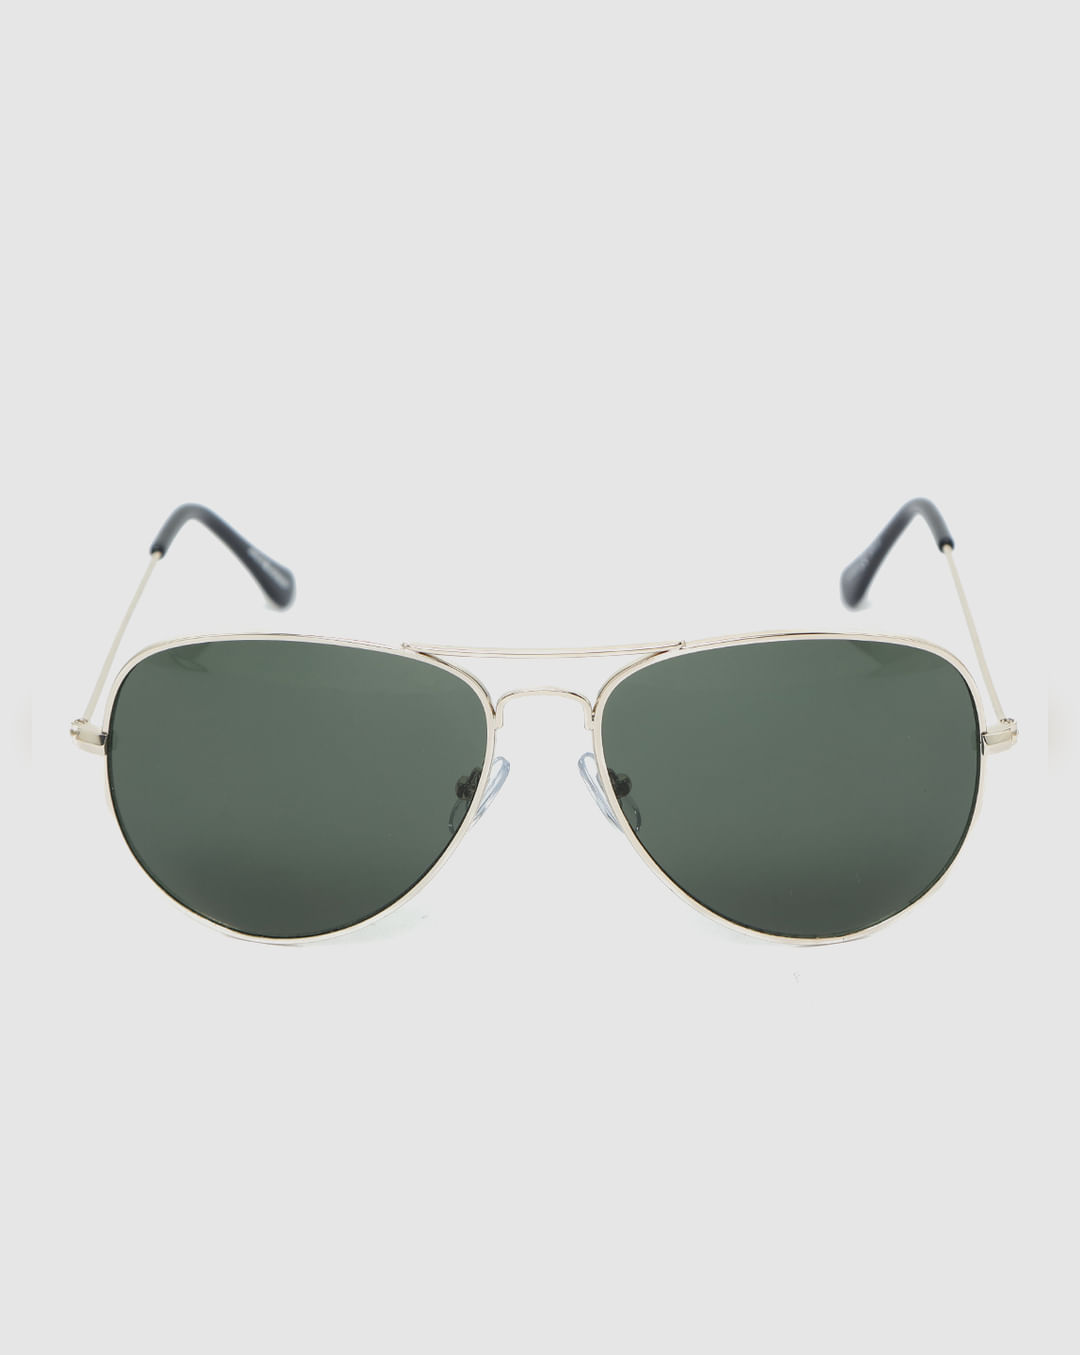 Buy Green Aviator Sunglasses for Men